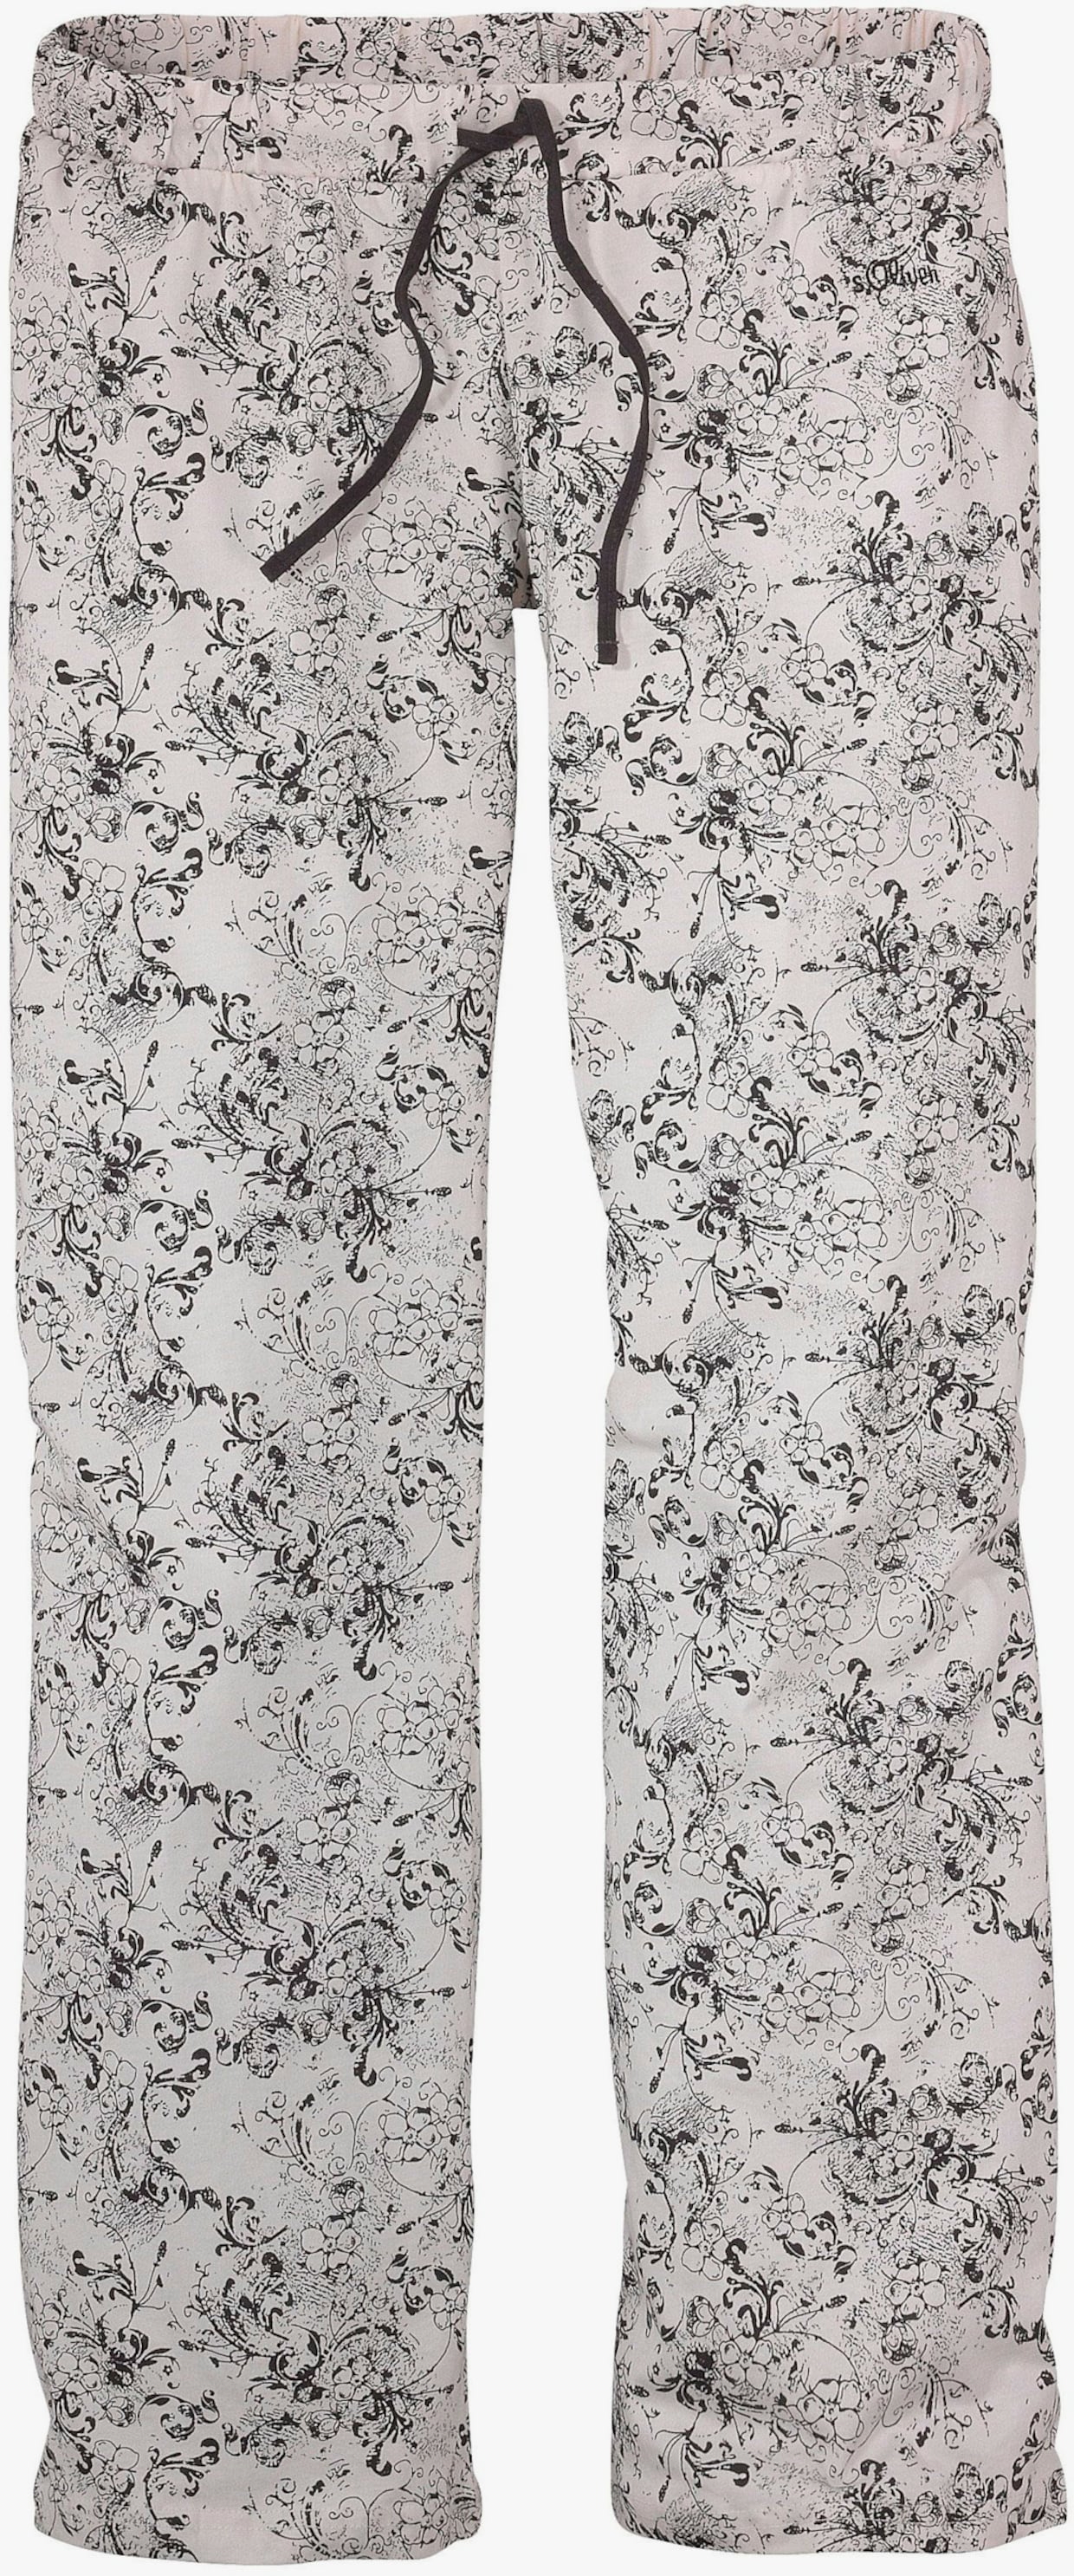 s.Oliver Pyjama - anthrazit, weiß-geblümt